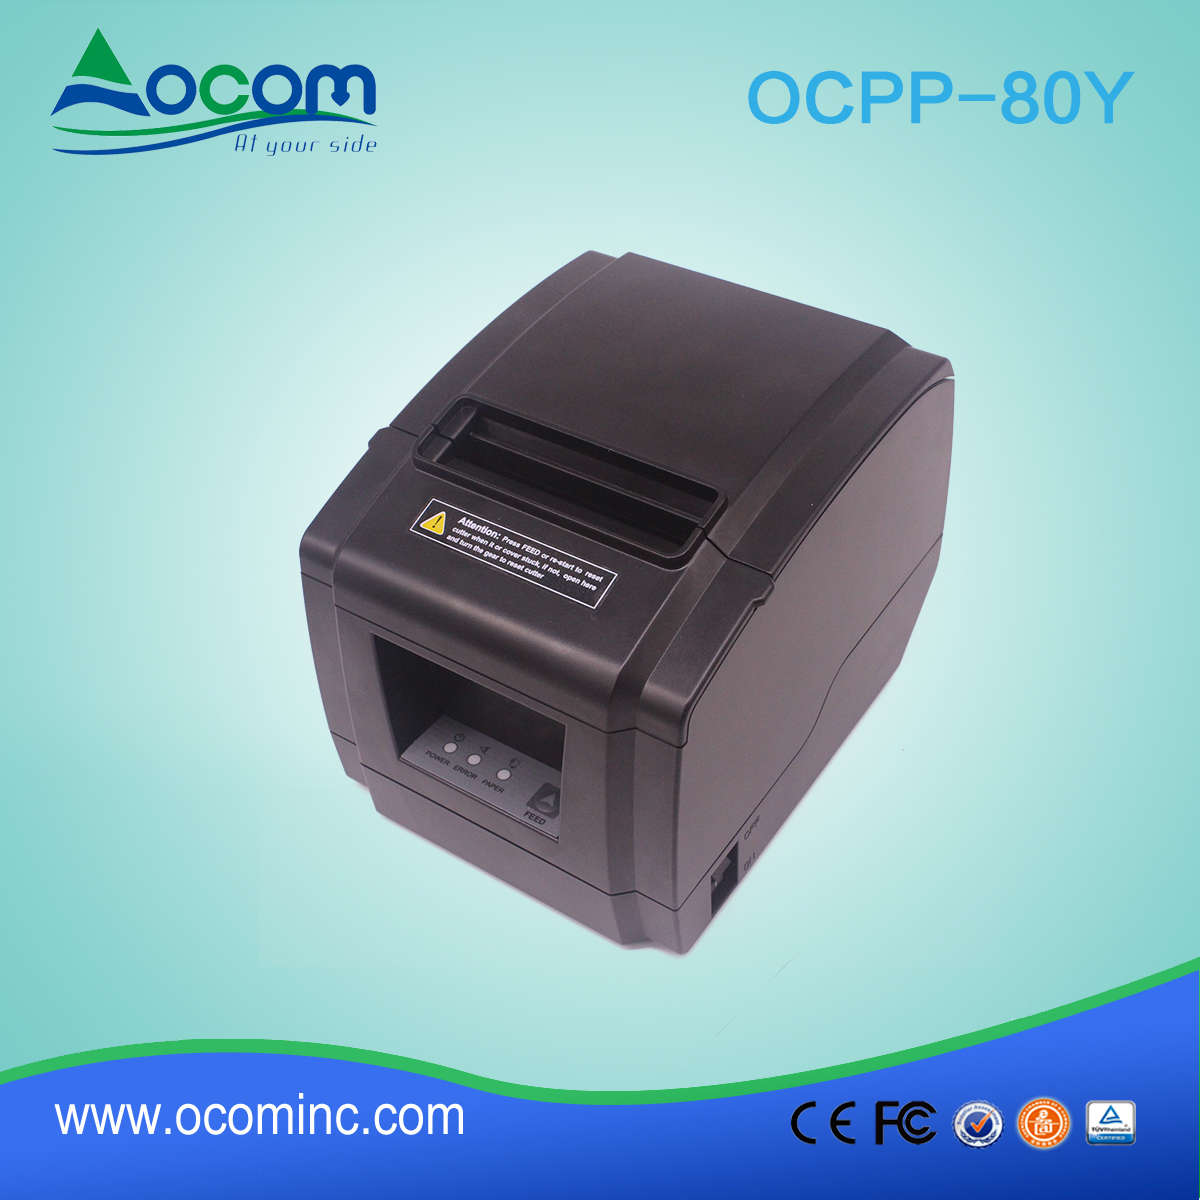 Nova Impressora Térmica OCPP-80Y 80mm Com Usb e Auto Cutter